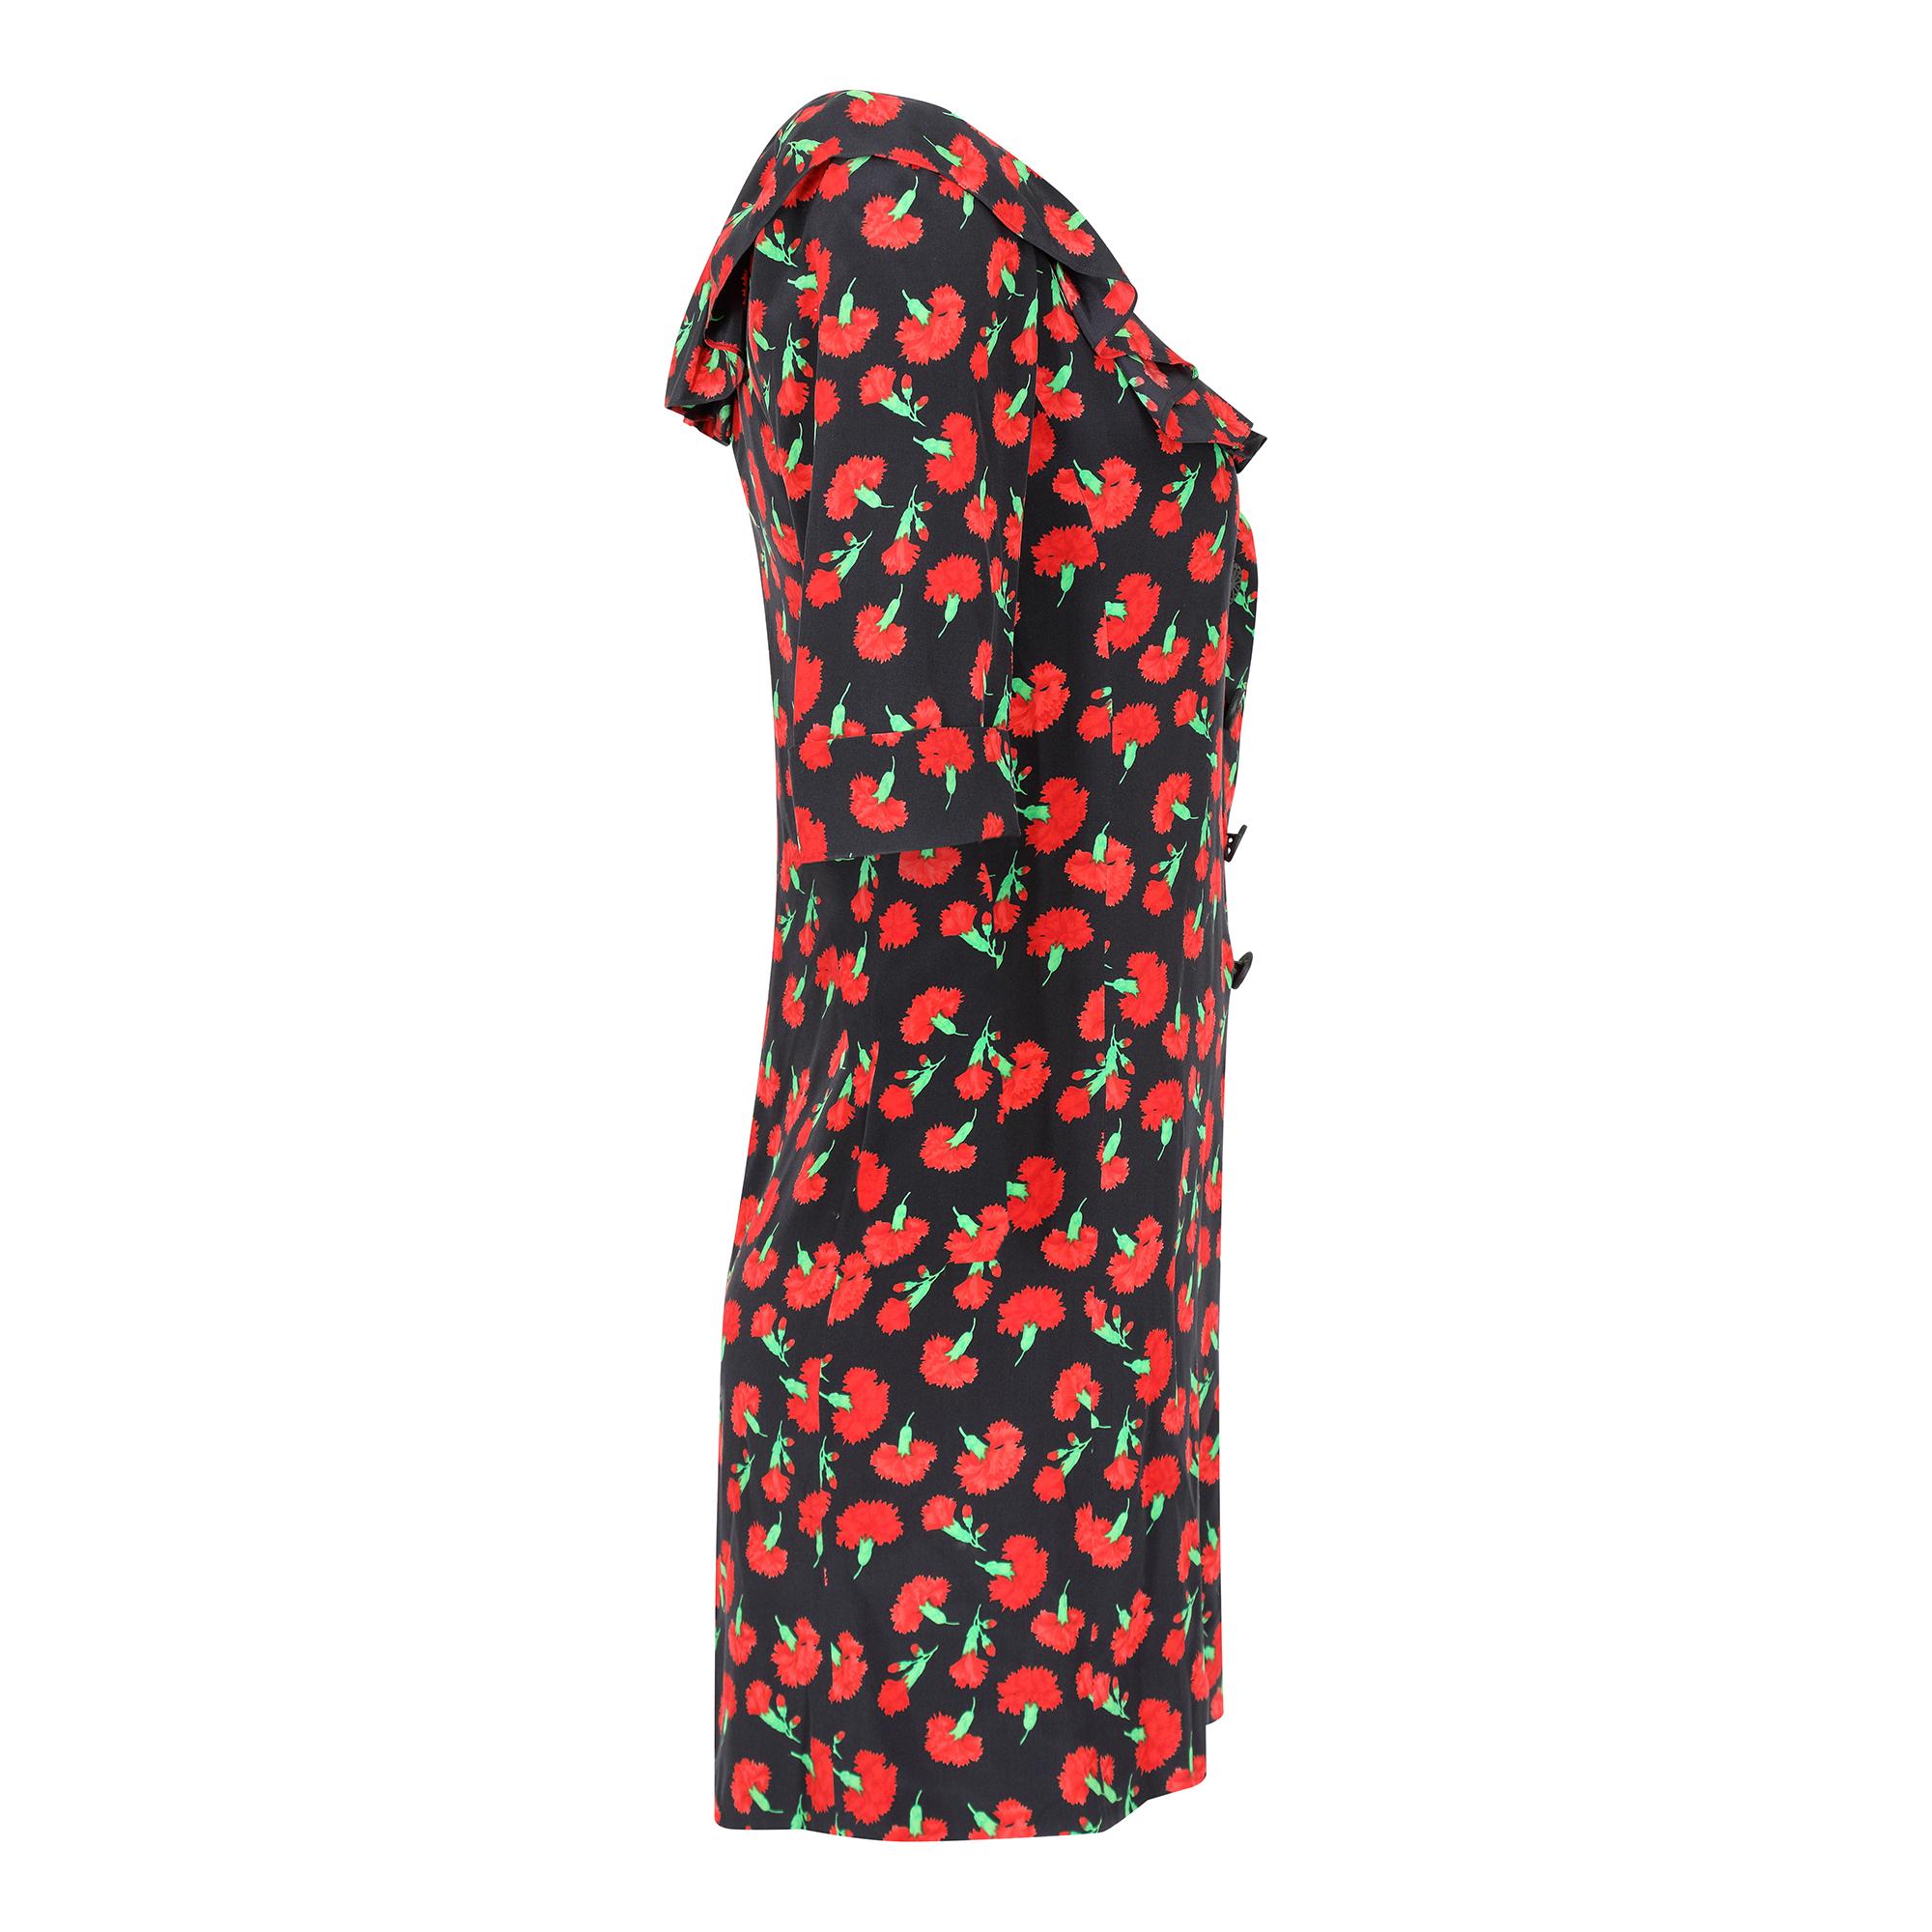 Ein bemerkenswertes Kleid einer Design-Ikone, Yves Saint Laurent, als er noch an der Spitze seines gleichnamigen Modehauses stand.  Dieses Kleid hat seinen Ursprung im Herbst/Winter 94 - 95  Ready-to-Wear-Kollektion, bei der der schwarz-rote